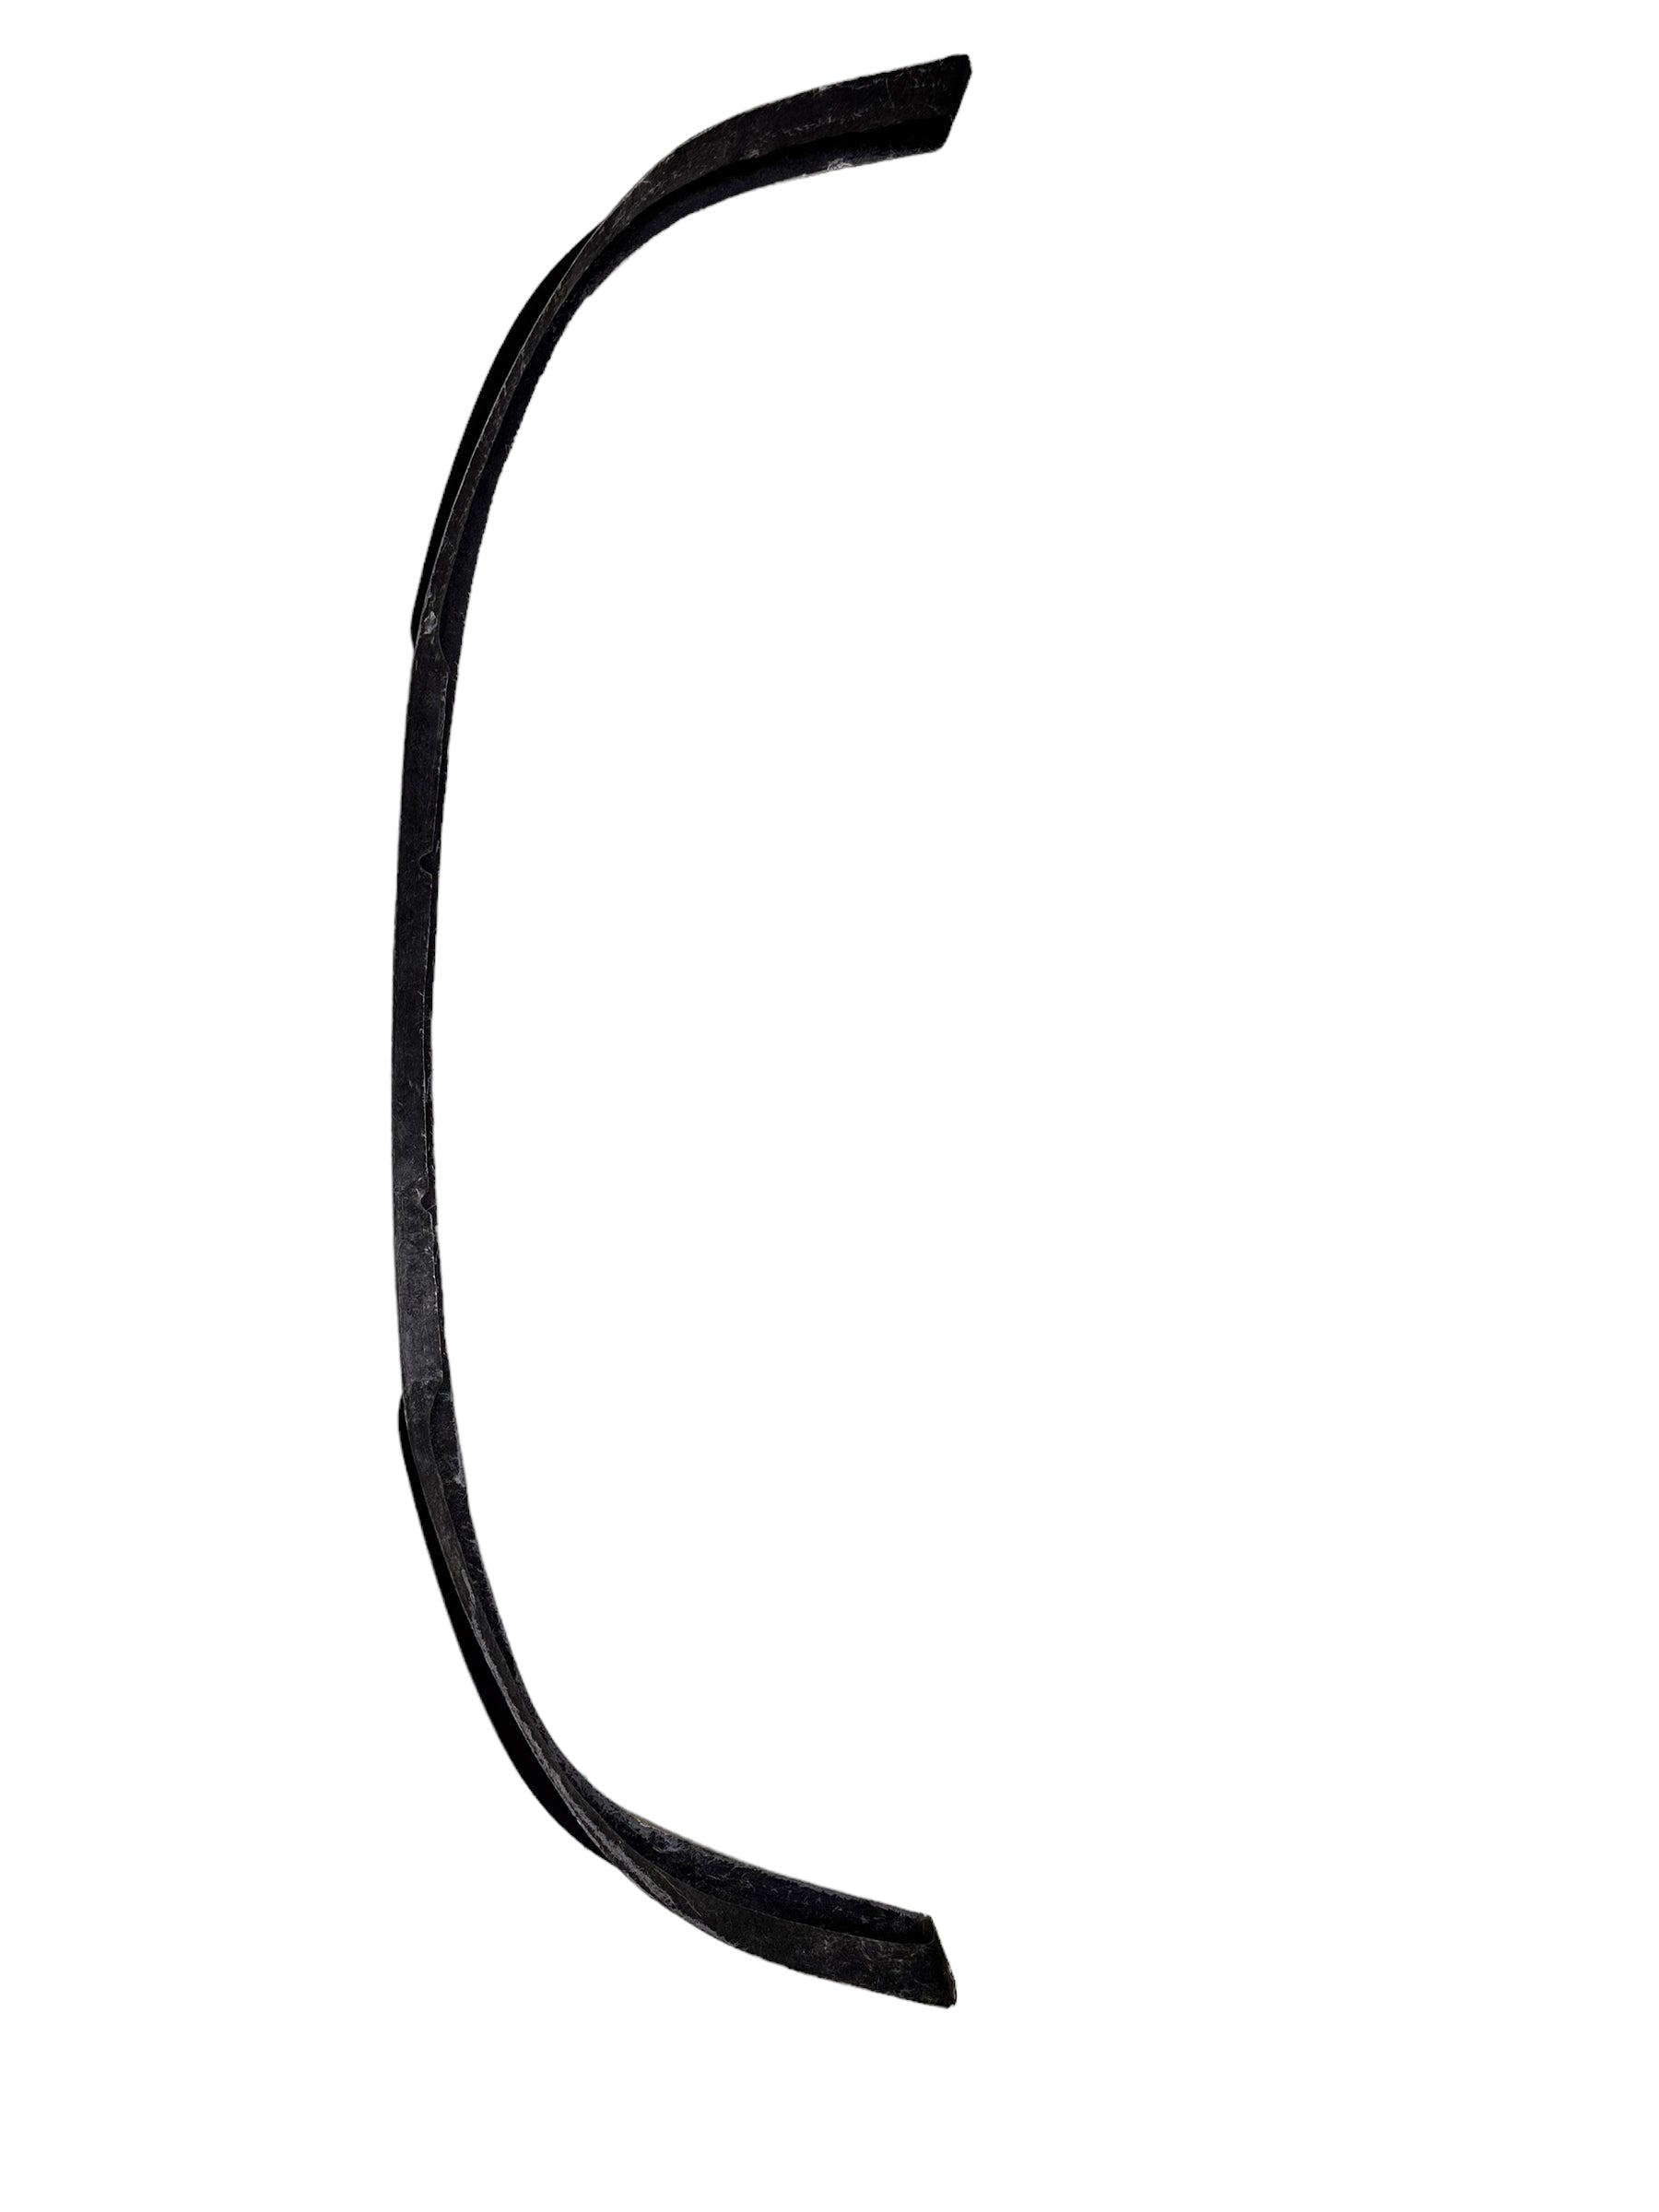 Polo VIVO 9n shape fiberglass FRONT SPOILER Matt black